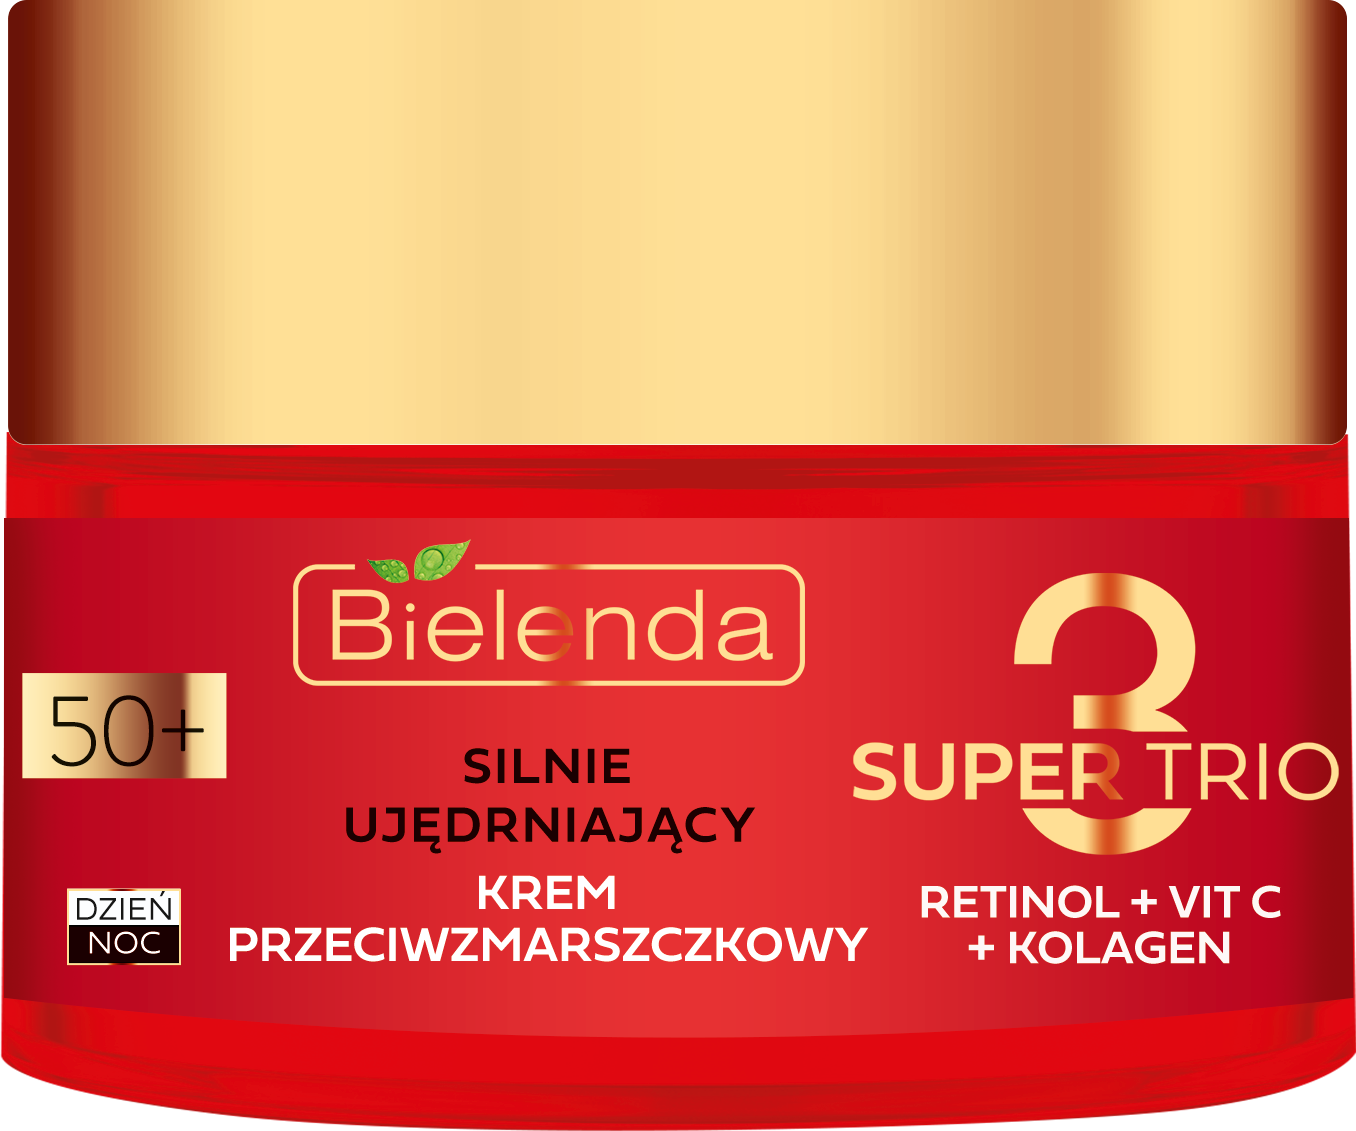 Крем для лица Bielenda Super Trio (Retinol + Vit C + Kolagen) 50+, 50 мл